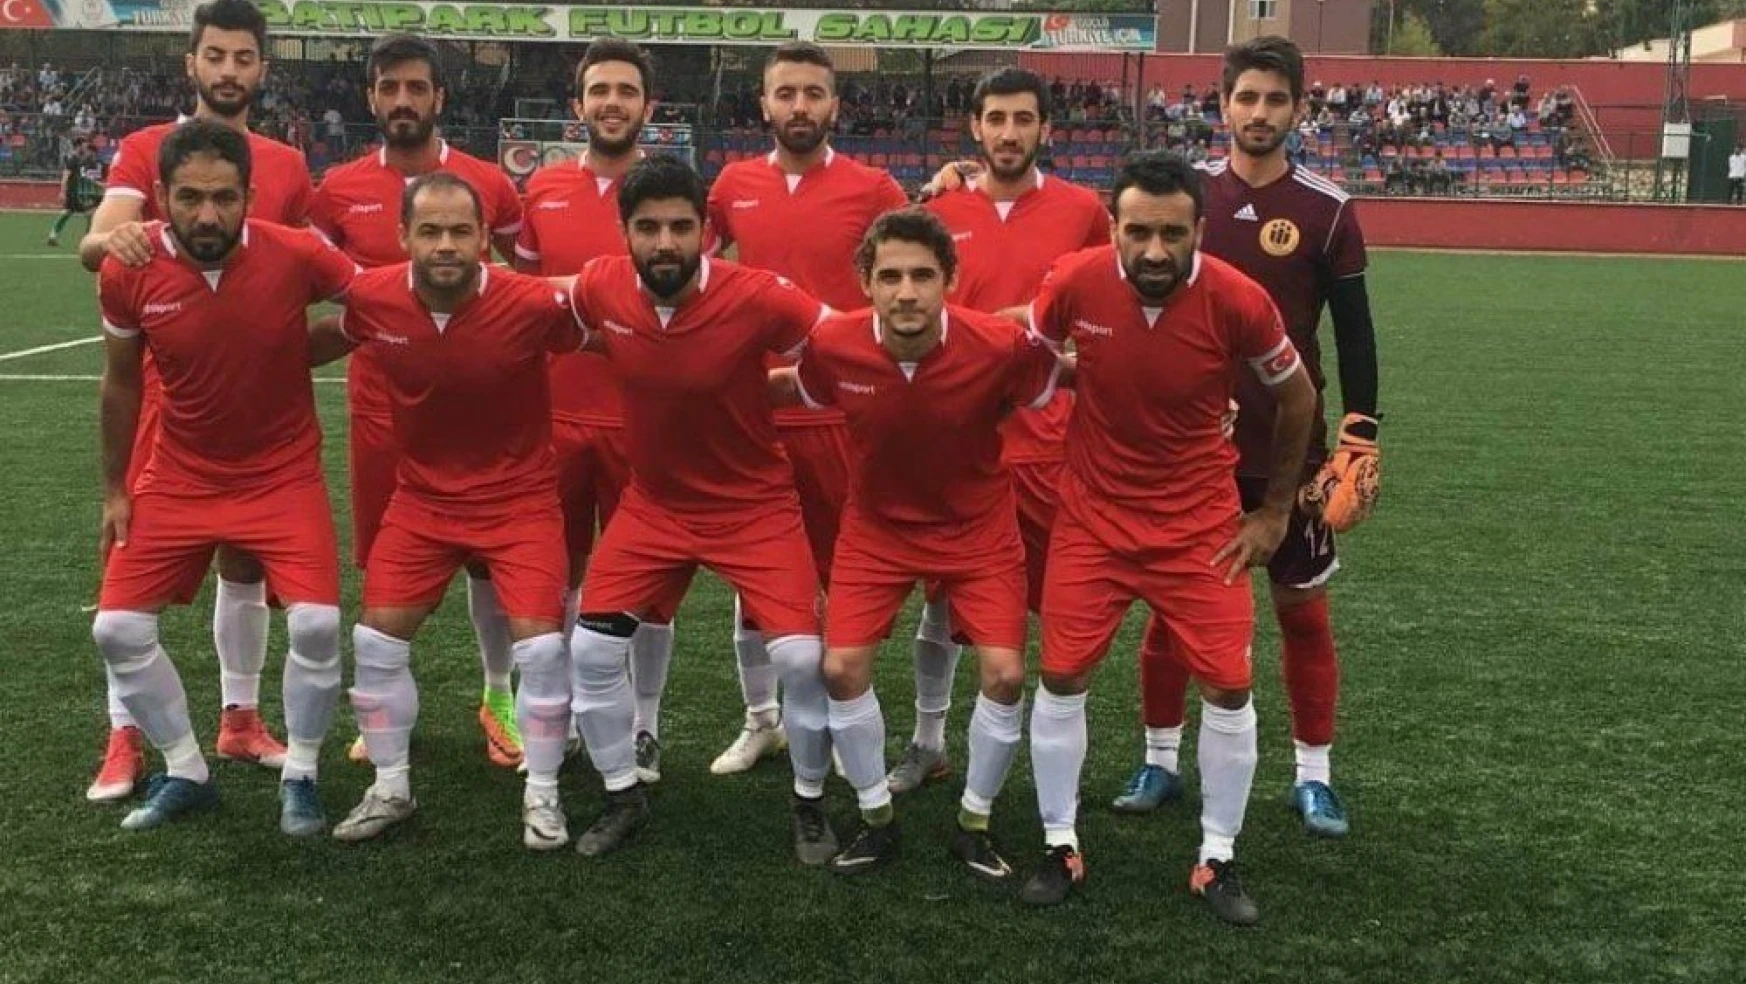 İnönü Üniversitesispor, deplasmanda Dumlupınarspor'u 2-0 mağlup etti
